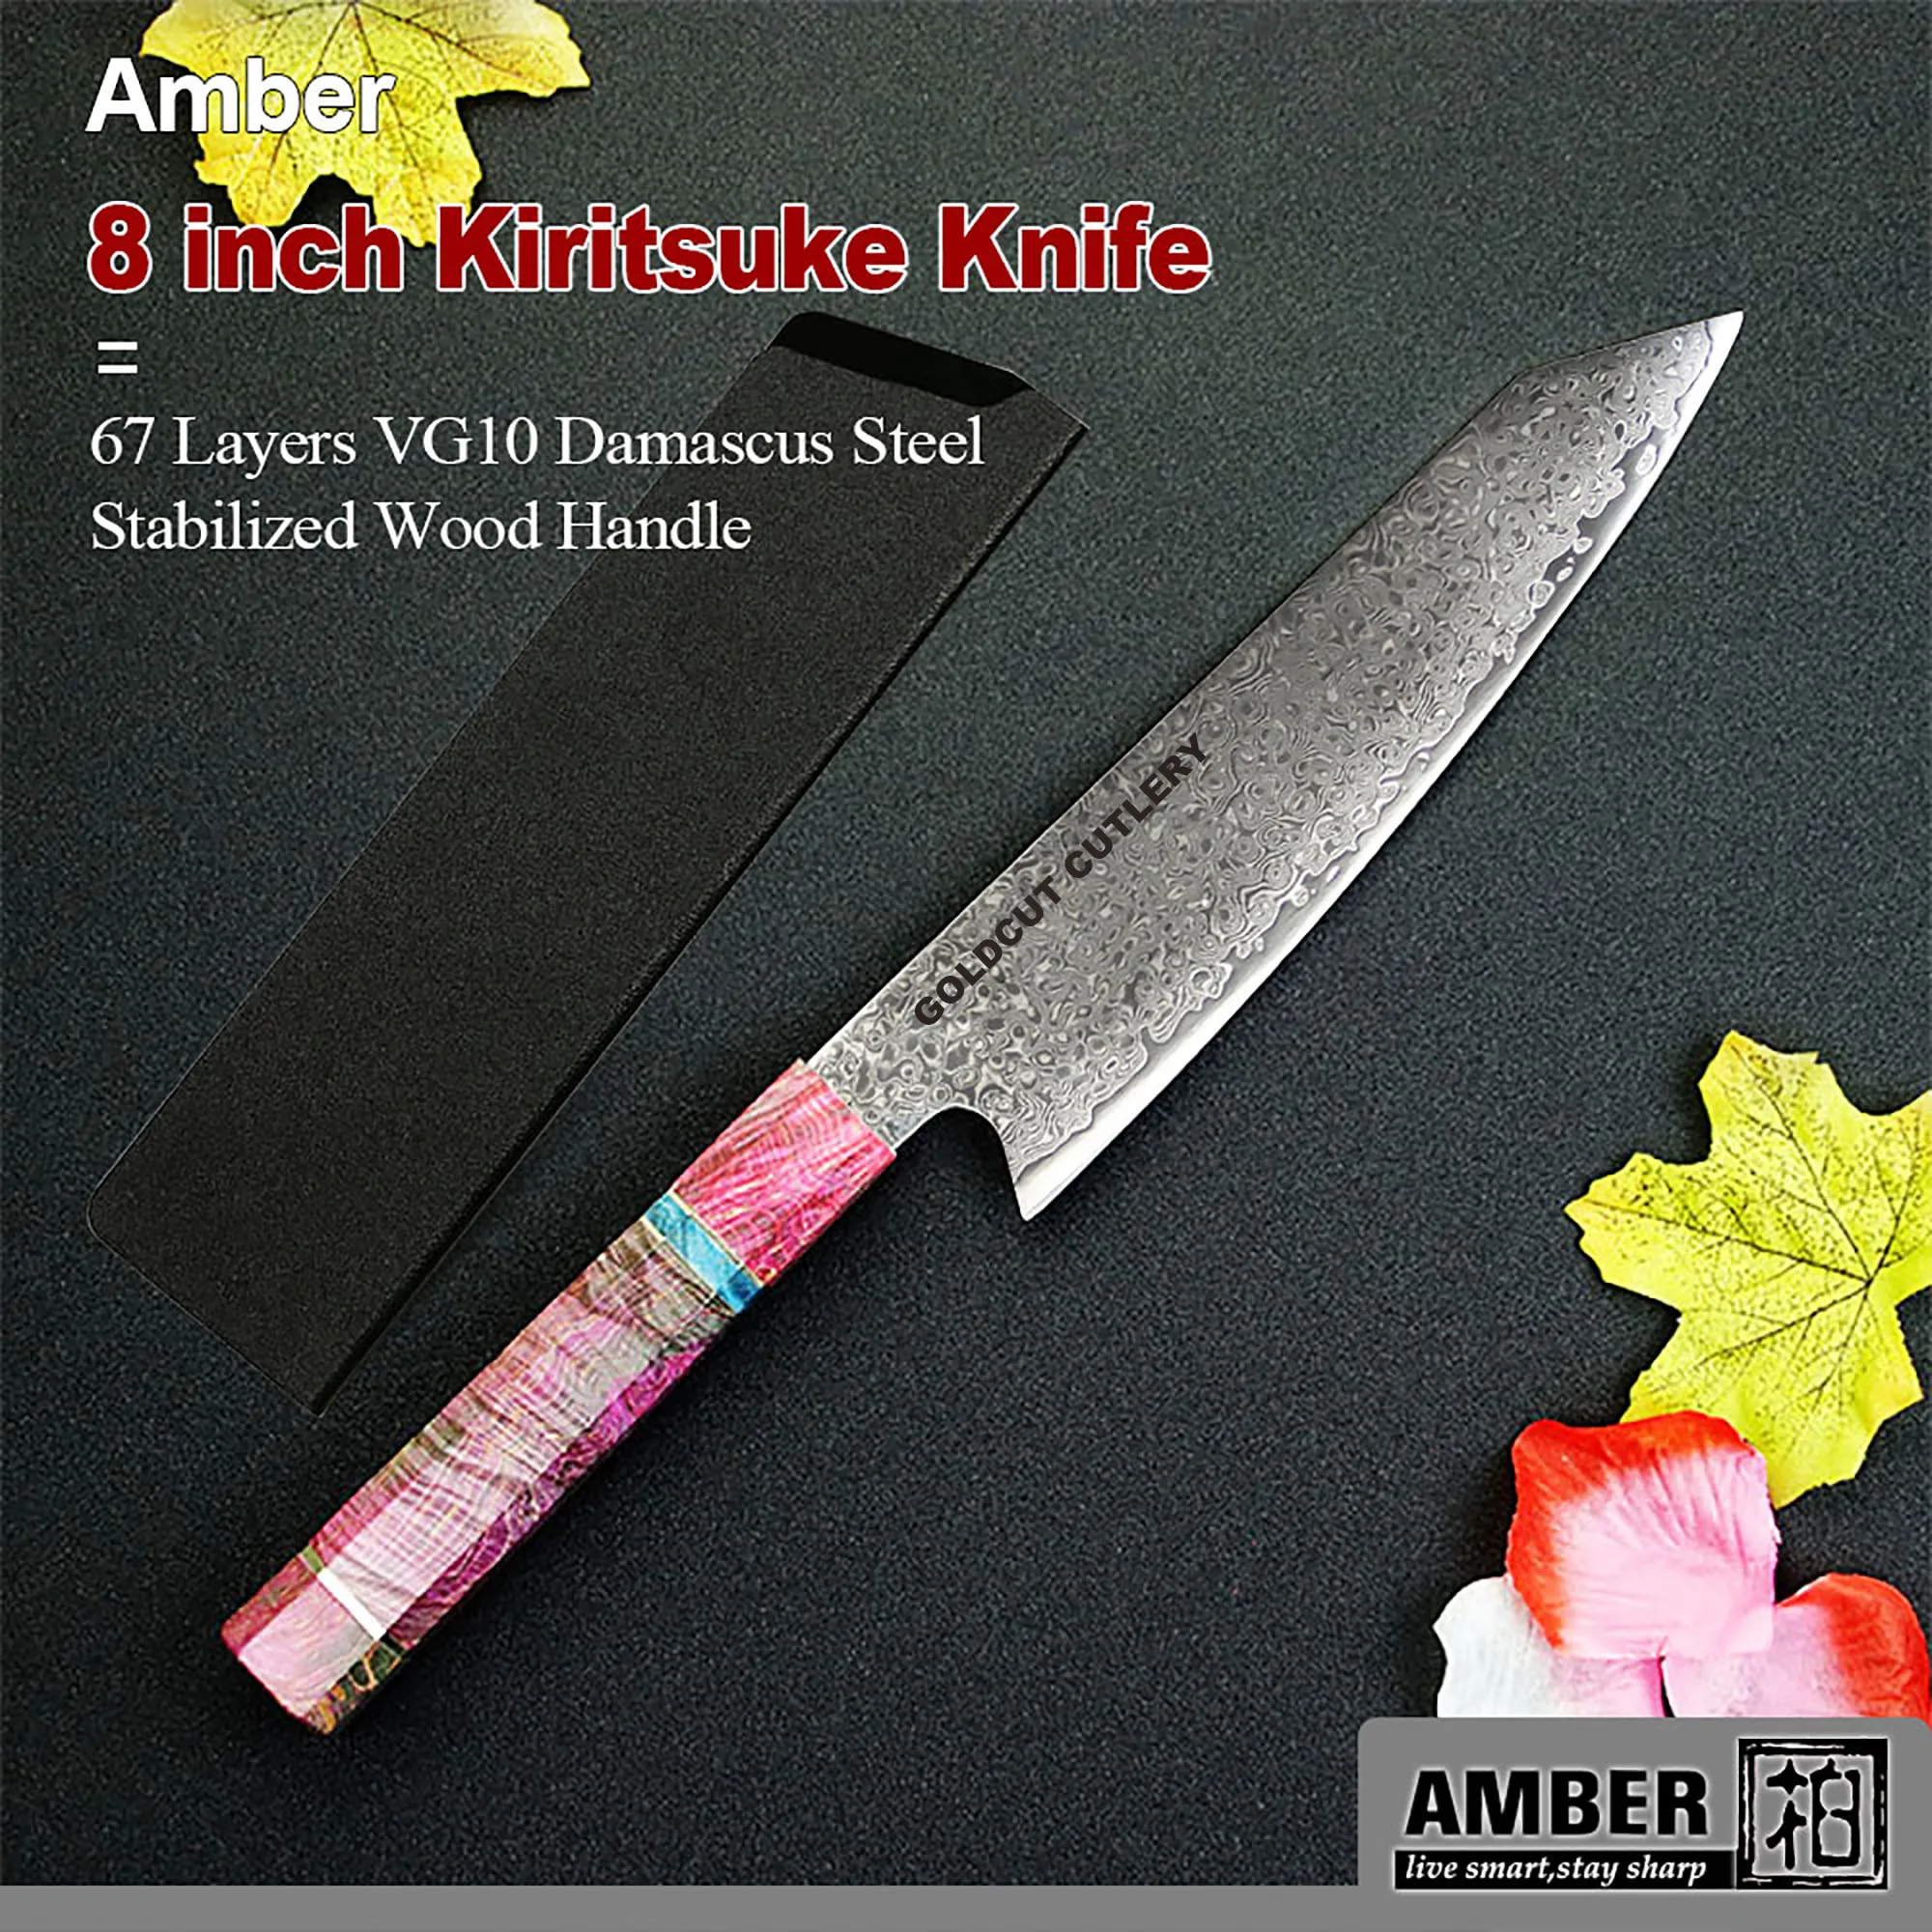 Posate GOLDCUT coltello Kiritsuke 67 strati VG10 coltelli da cucina in acciaio damasco coltello giapponese professionale manico in legno stabilizzato